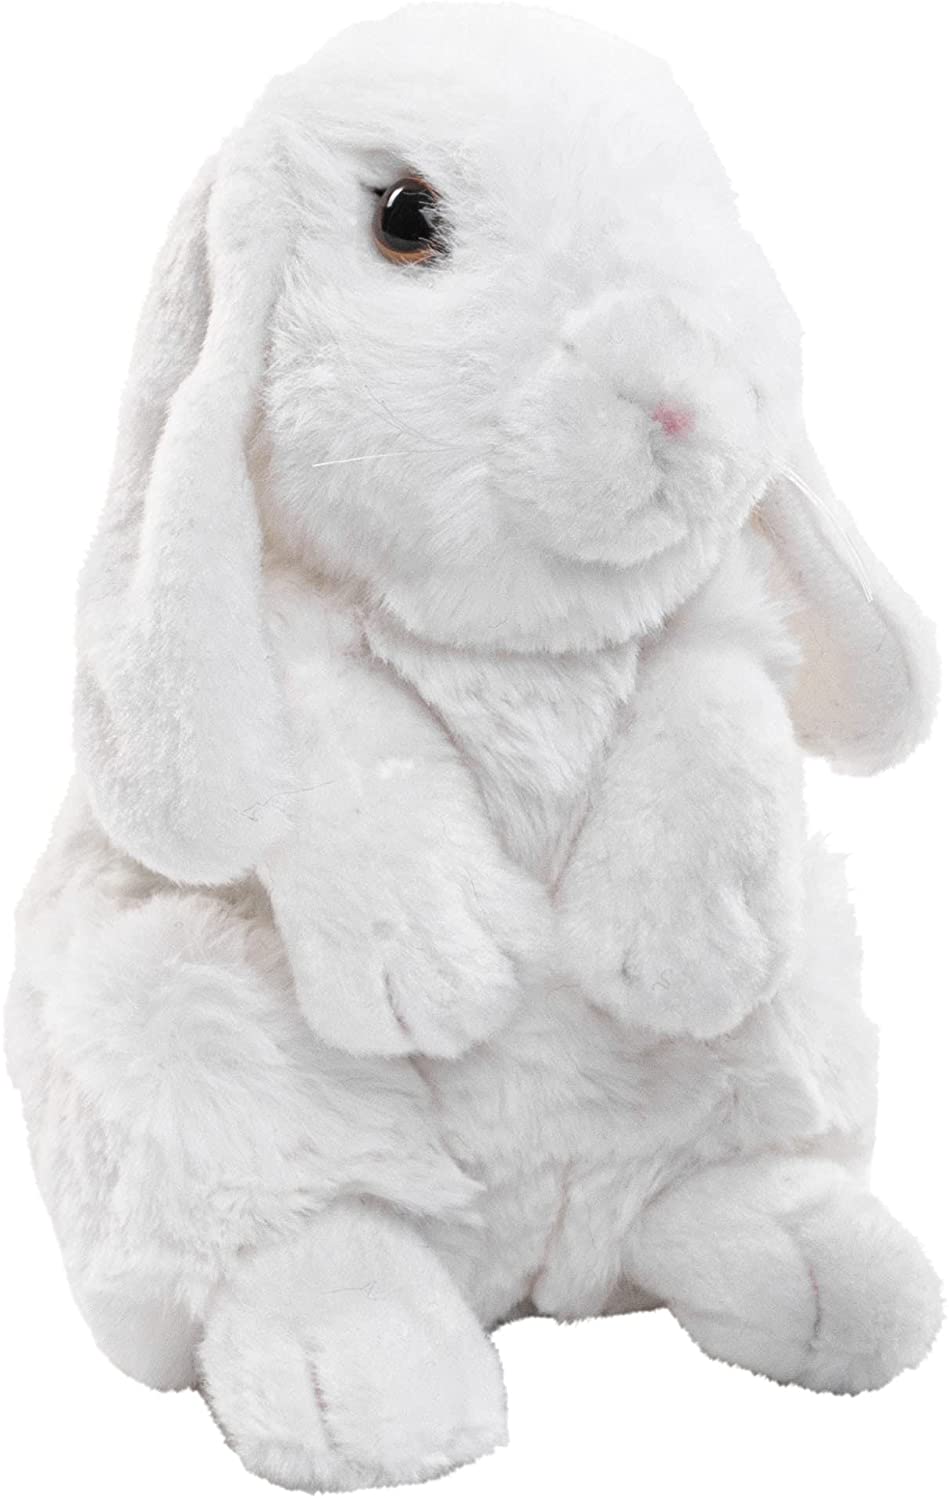  aries rabbit white - 19 cm (height)